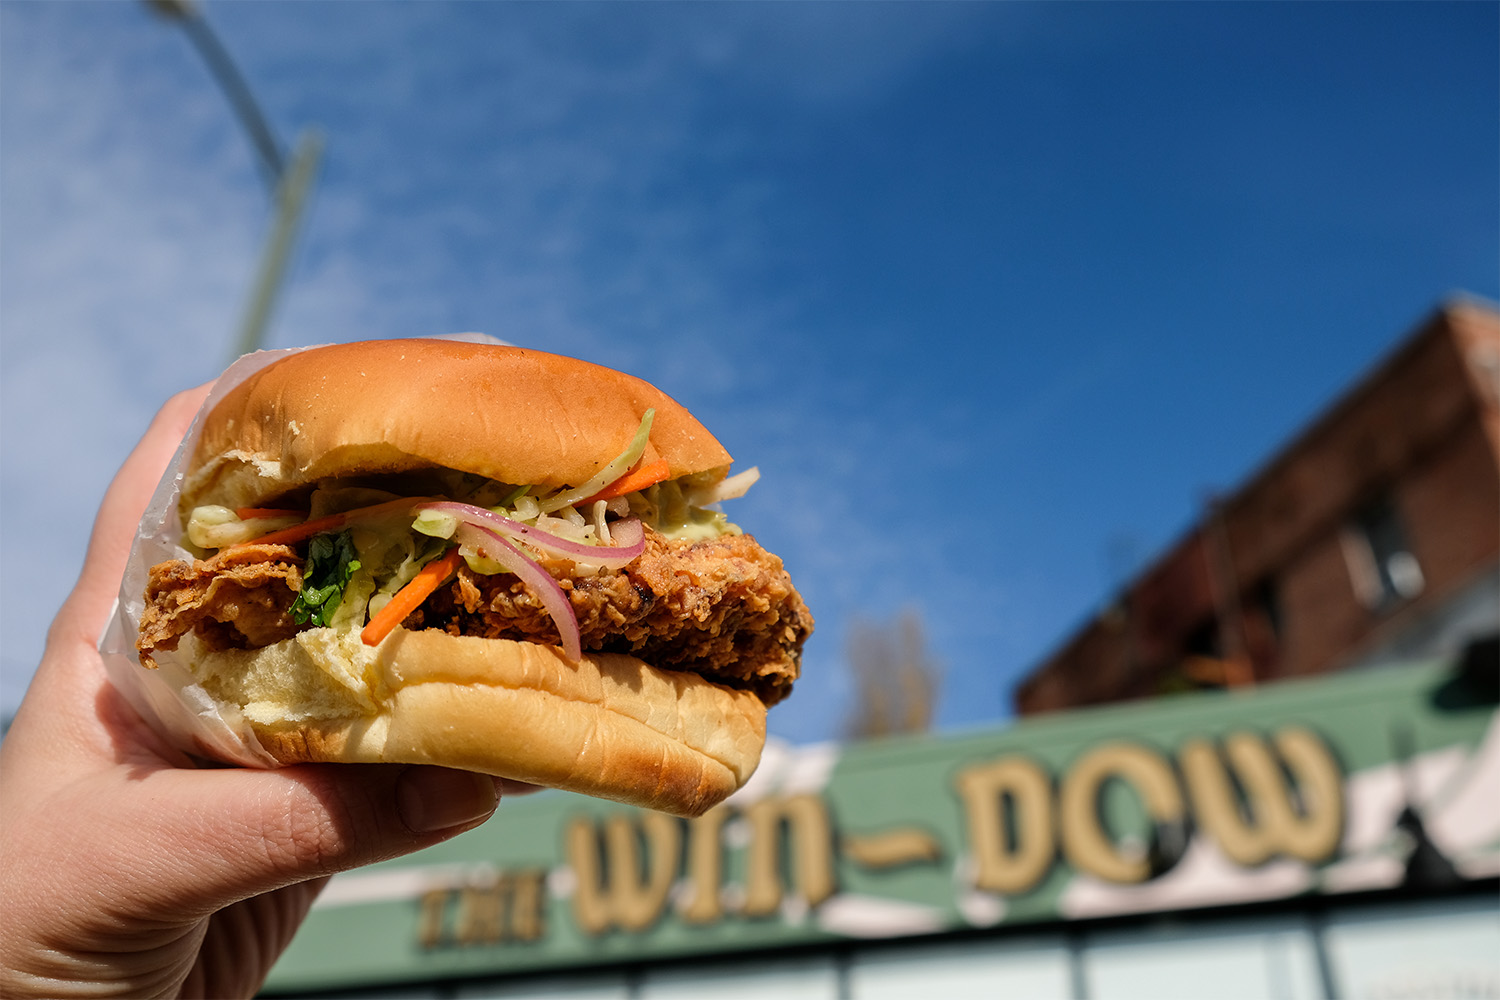 The Win~Dow's fried chicken sandwich.